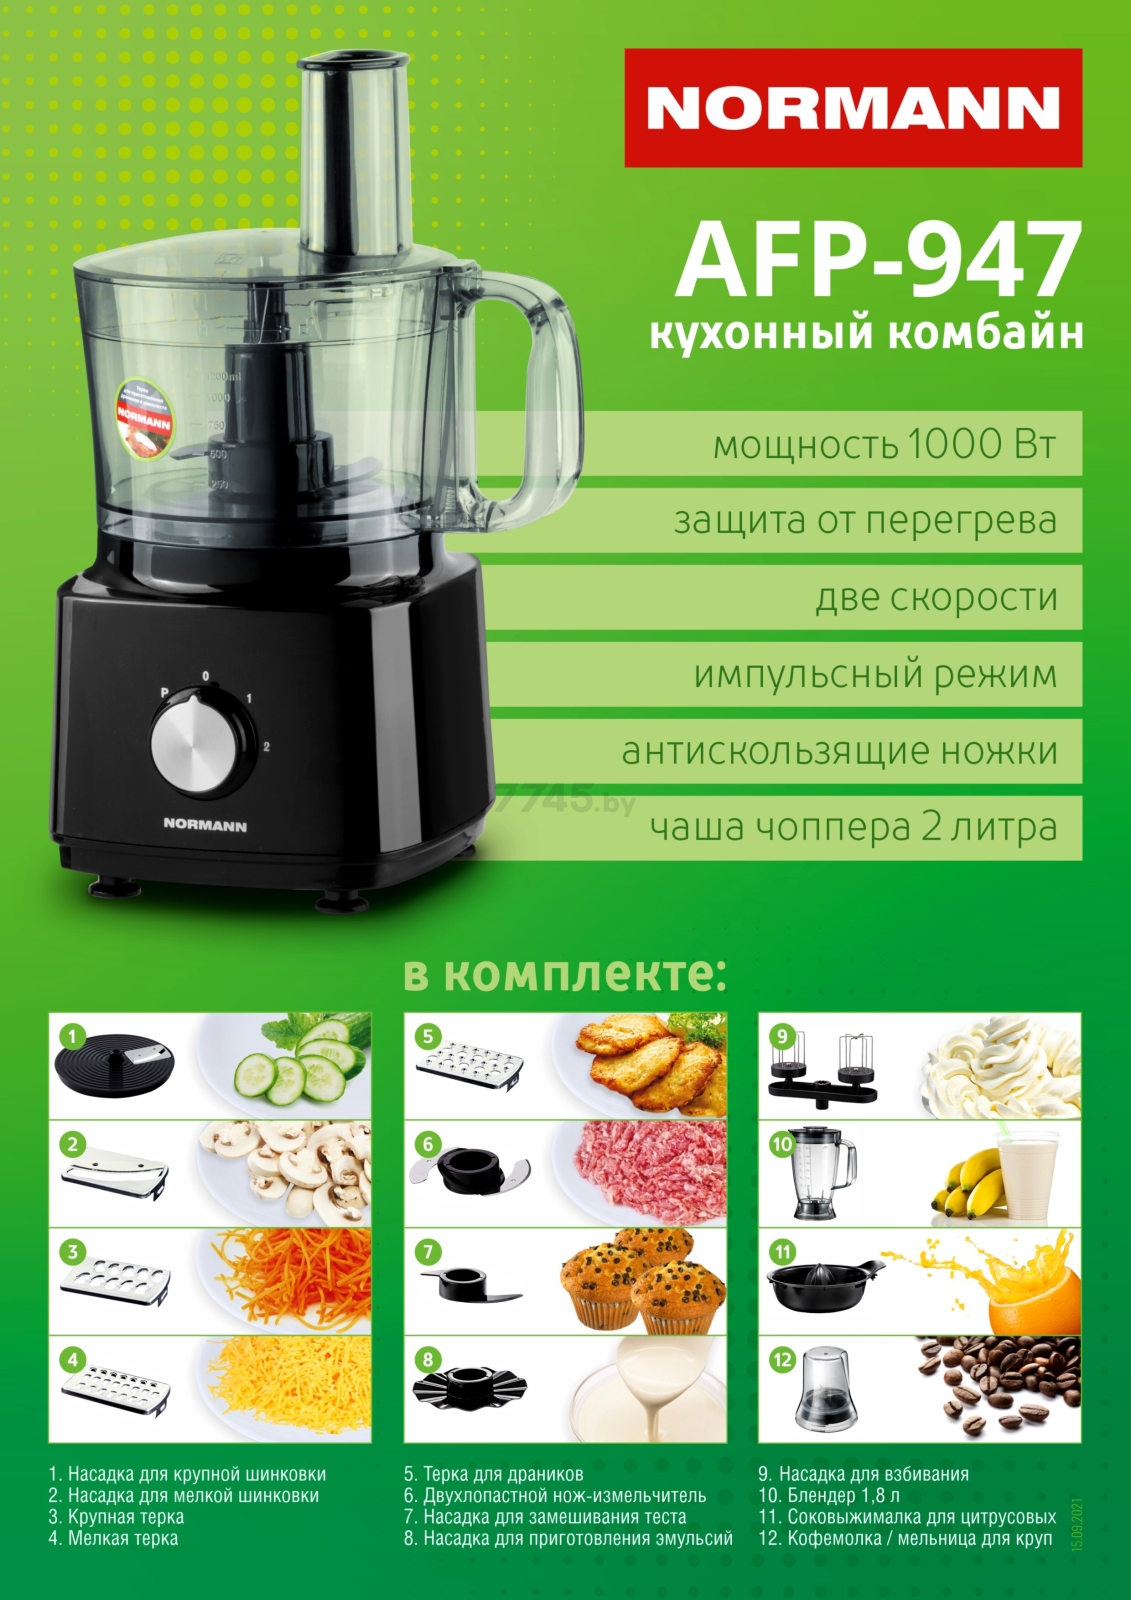 Комбайн кухонный NORMANN AFP  в Минске — цены в е .